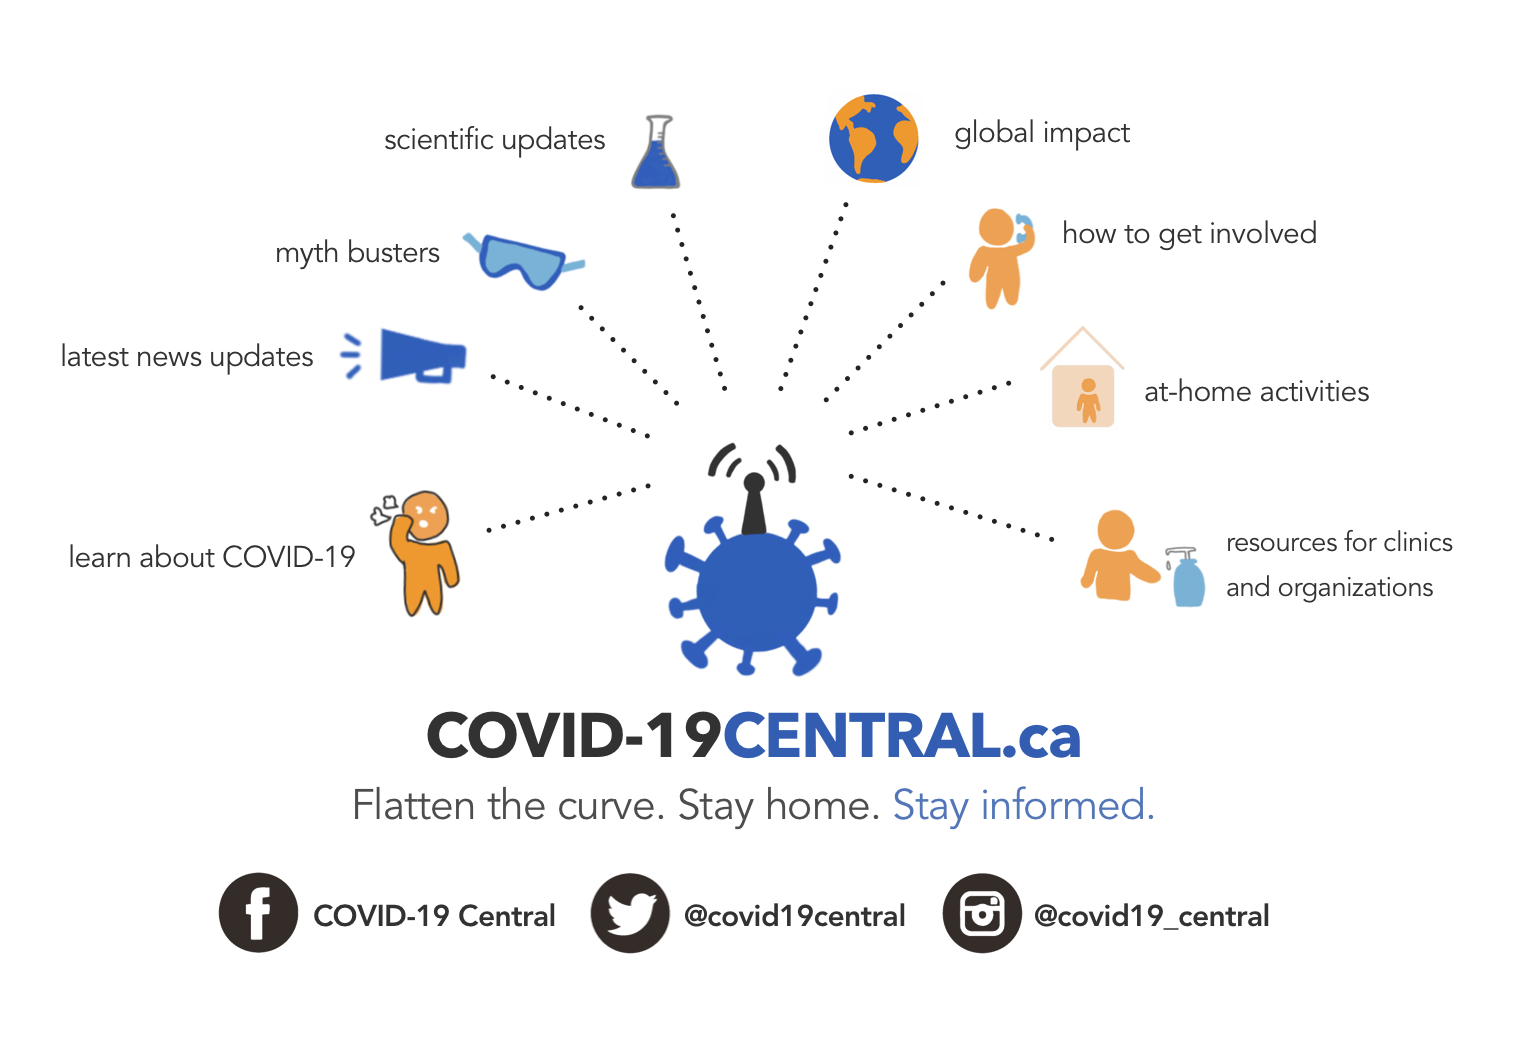 Covid-19 Central